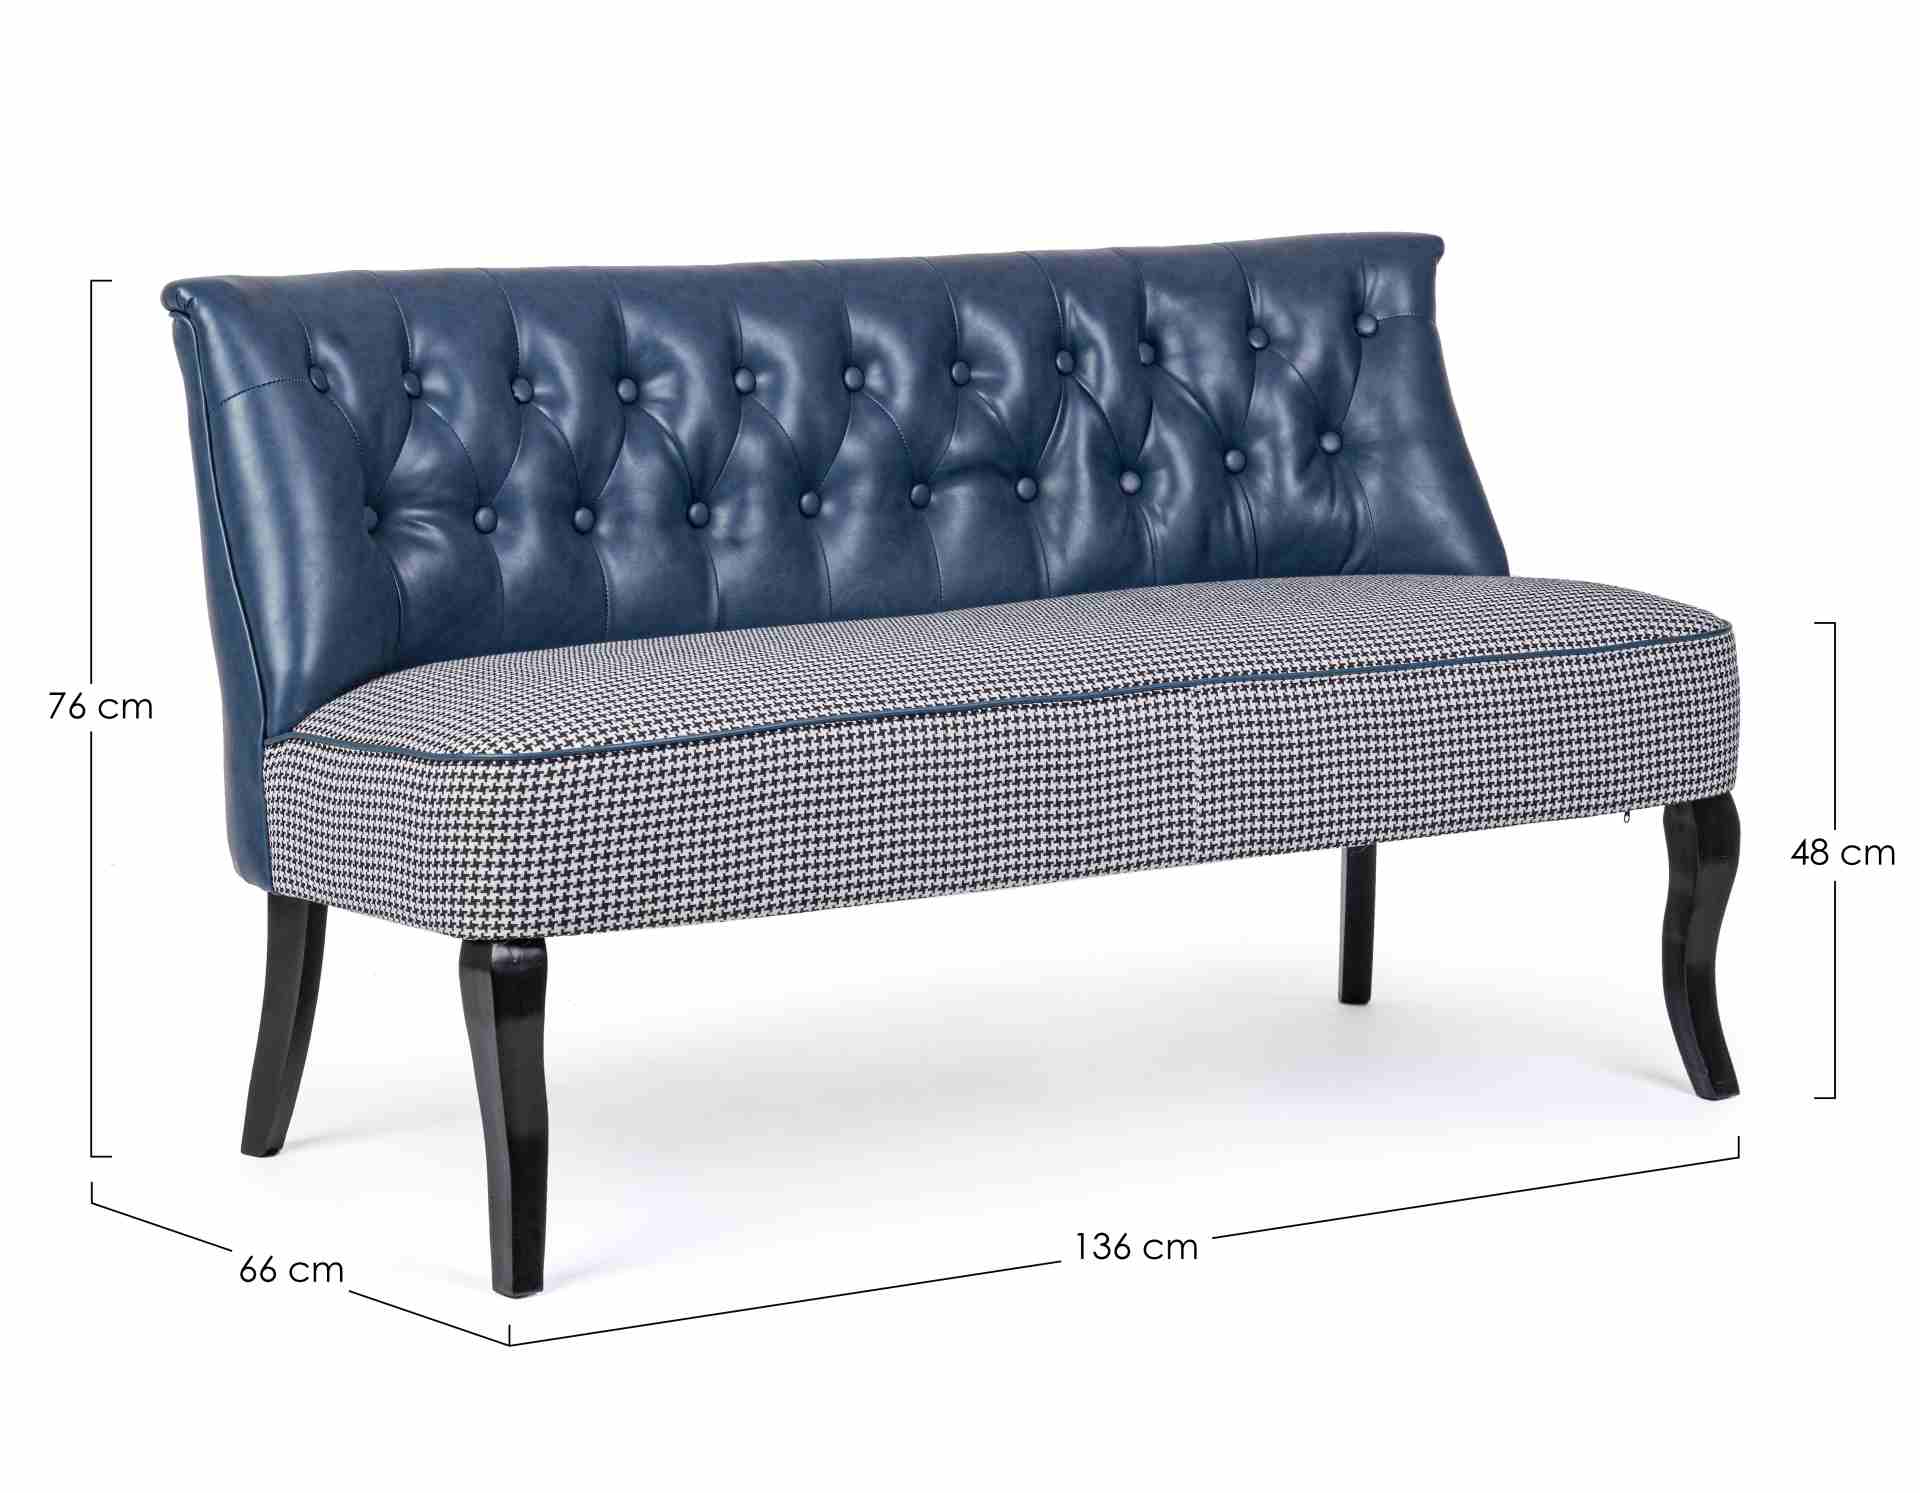 Das Sofa Batilda überzeugt mit seinem klassischen Design. Gefertigt wurde es aus Kunstleder, welches einen blauen Farbton besitzt. Das Gestell ist aus Kiefernholz und hat eine schwarze Farbe. Das Sofa ist in der Ausführung als 2-Sitzer. Die Breite beträgt